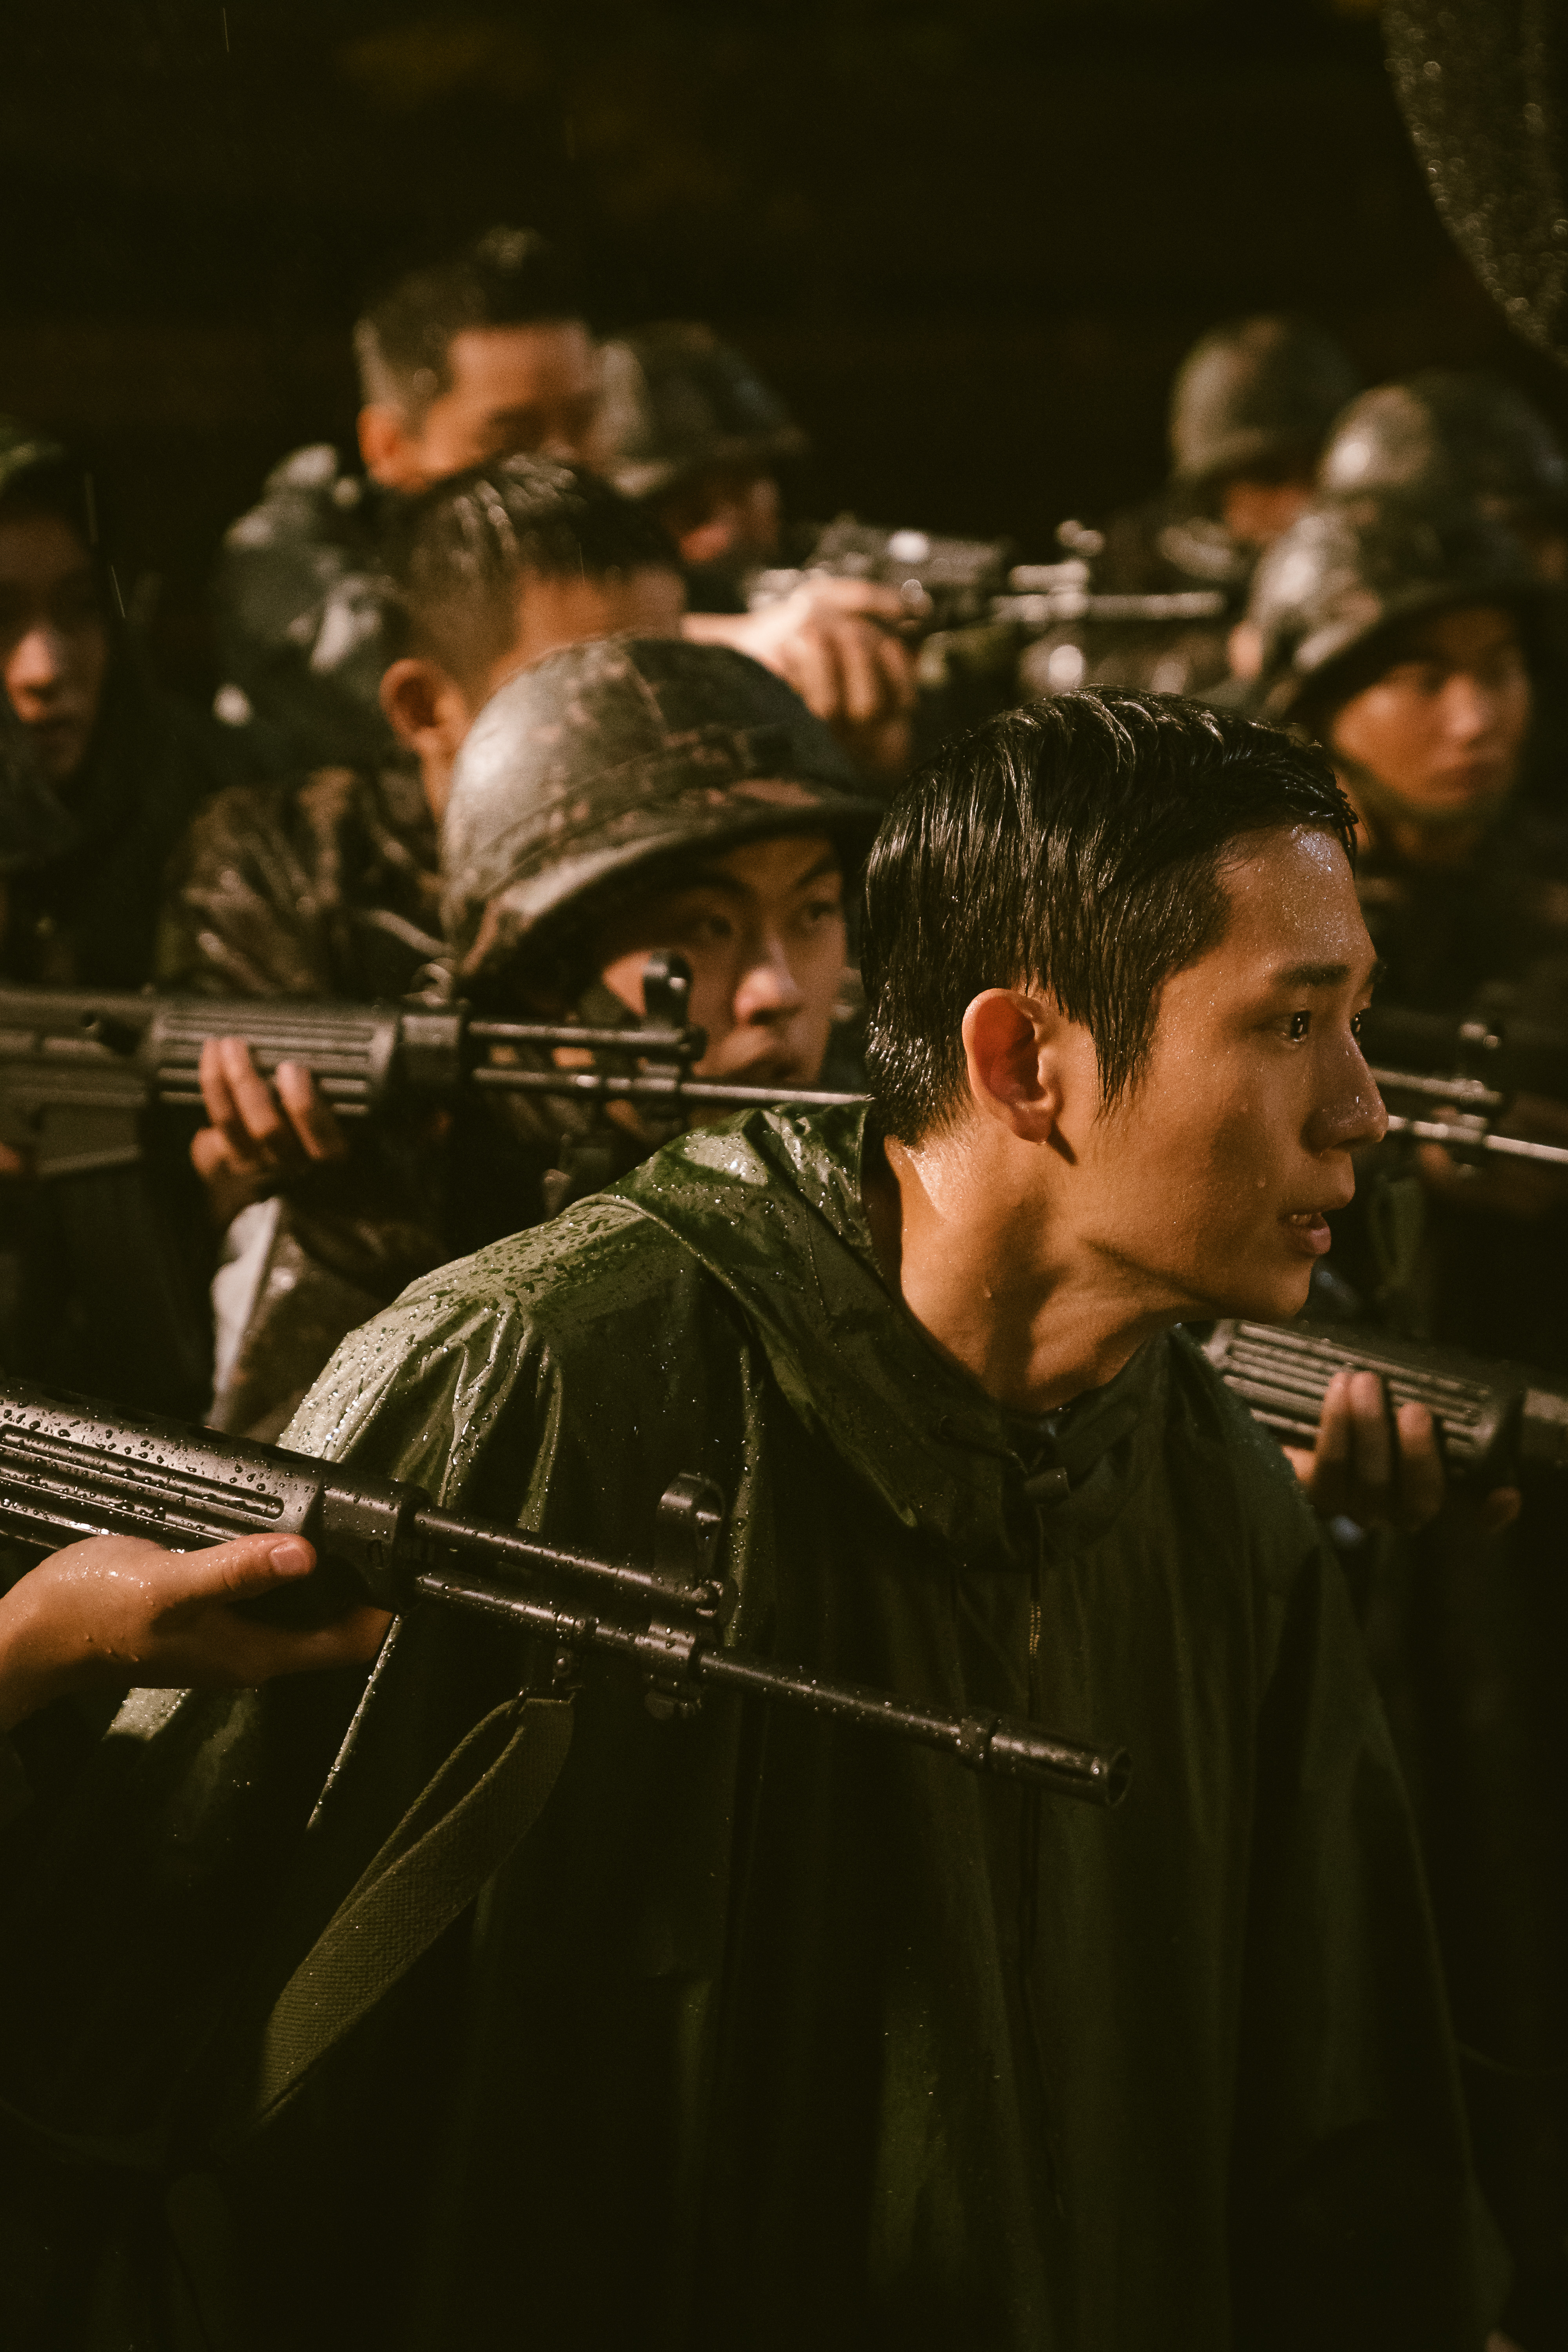 Jung Hae-in in <i></p>
<p>D.P.</i> (Grâce à Netflix) “/></p>
<p>Jung Hae-in <i>D.P.</i></p>
<p>La première saison de <i>D.P.</i>, Sorti en 2021, entraîné par un léger abus dans le système de conscription militaire obligatoire de la Corée du Sud et les raisons pour lesquelles certains sont désespérés de s’en sortir. Le titre de l’émission fait référence à une équipe de soldats appelée «Deserter Pursuit», qui est chargé de retrouver et de capturer des déserteurs militaires. Bien qu’il n’ait que six épisodes, la première saison a profondément résonné avec d’anciens conscrits et a même incité le ministère de la Défense de la Corée du Sud à publier une déclaration selon laquelle les incidents de violence et d’abus dans l’armée étaient en baisse. Le réalisateur Han Jun-hee revient pour la deuxième saison, ainsi que les acteurs Jung Hae-in et Koo Kyo-Hwan, qui ont respectivement joué un Jun-Ho et Han Ho-Yeol, le duo principal de la série.</p>
<h2><span id=